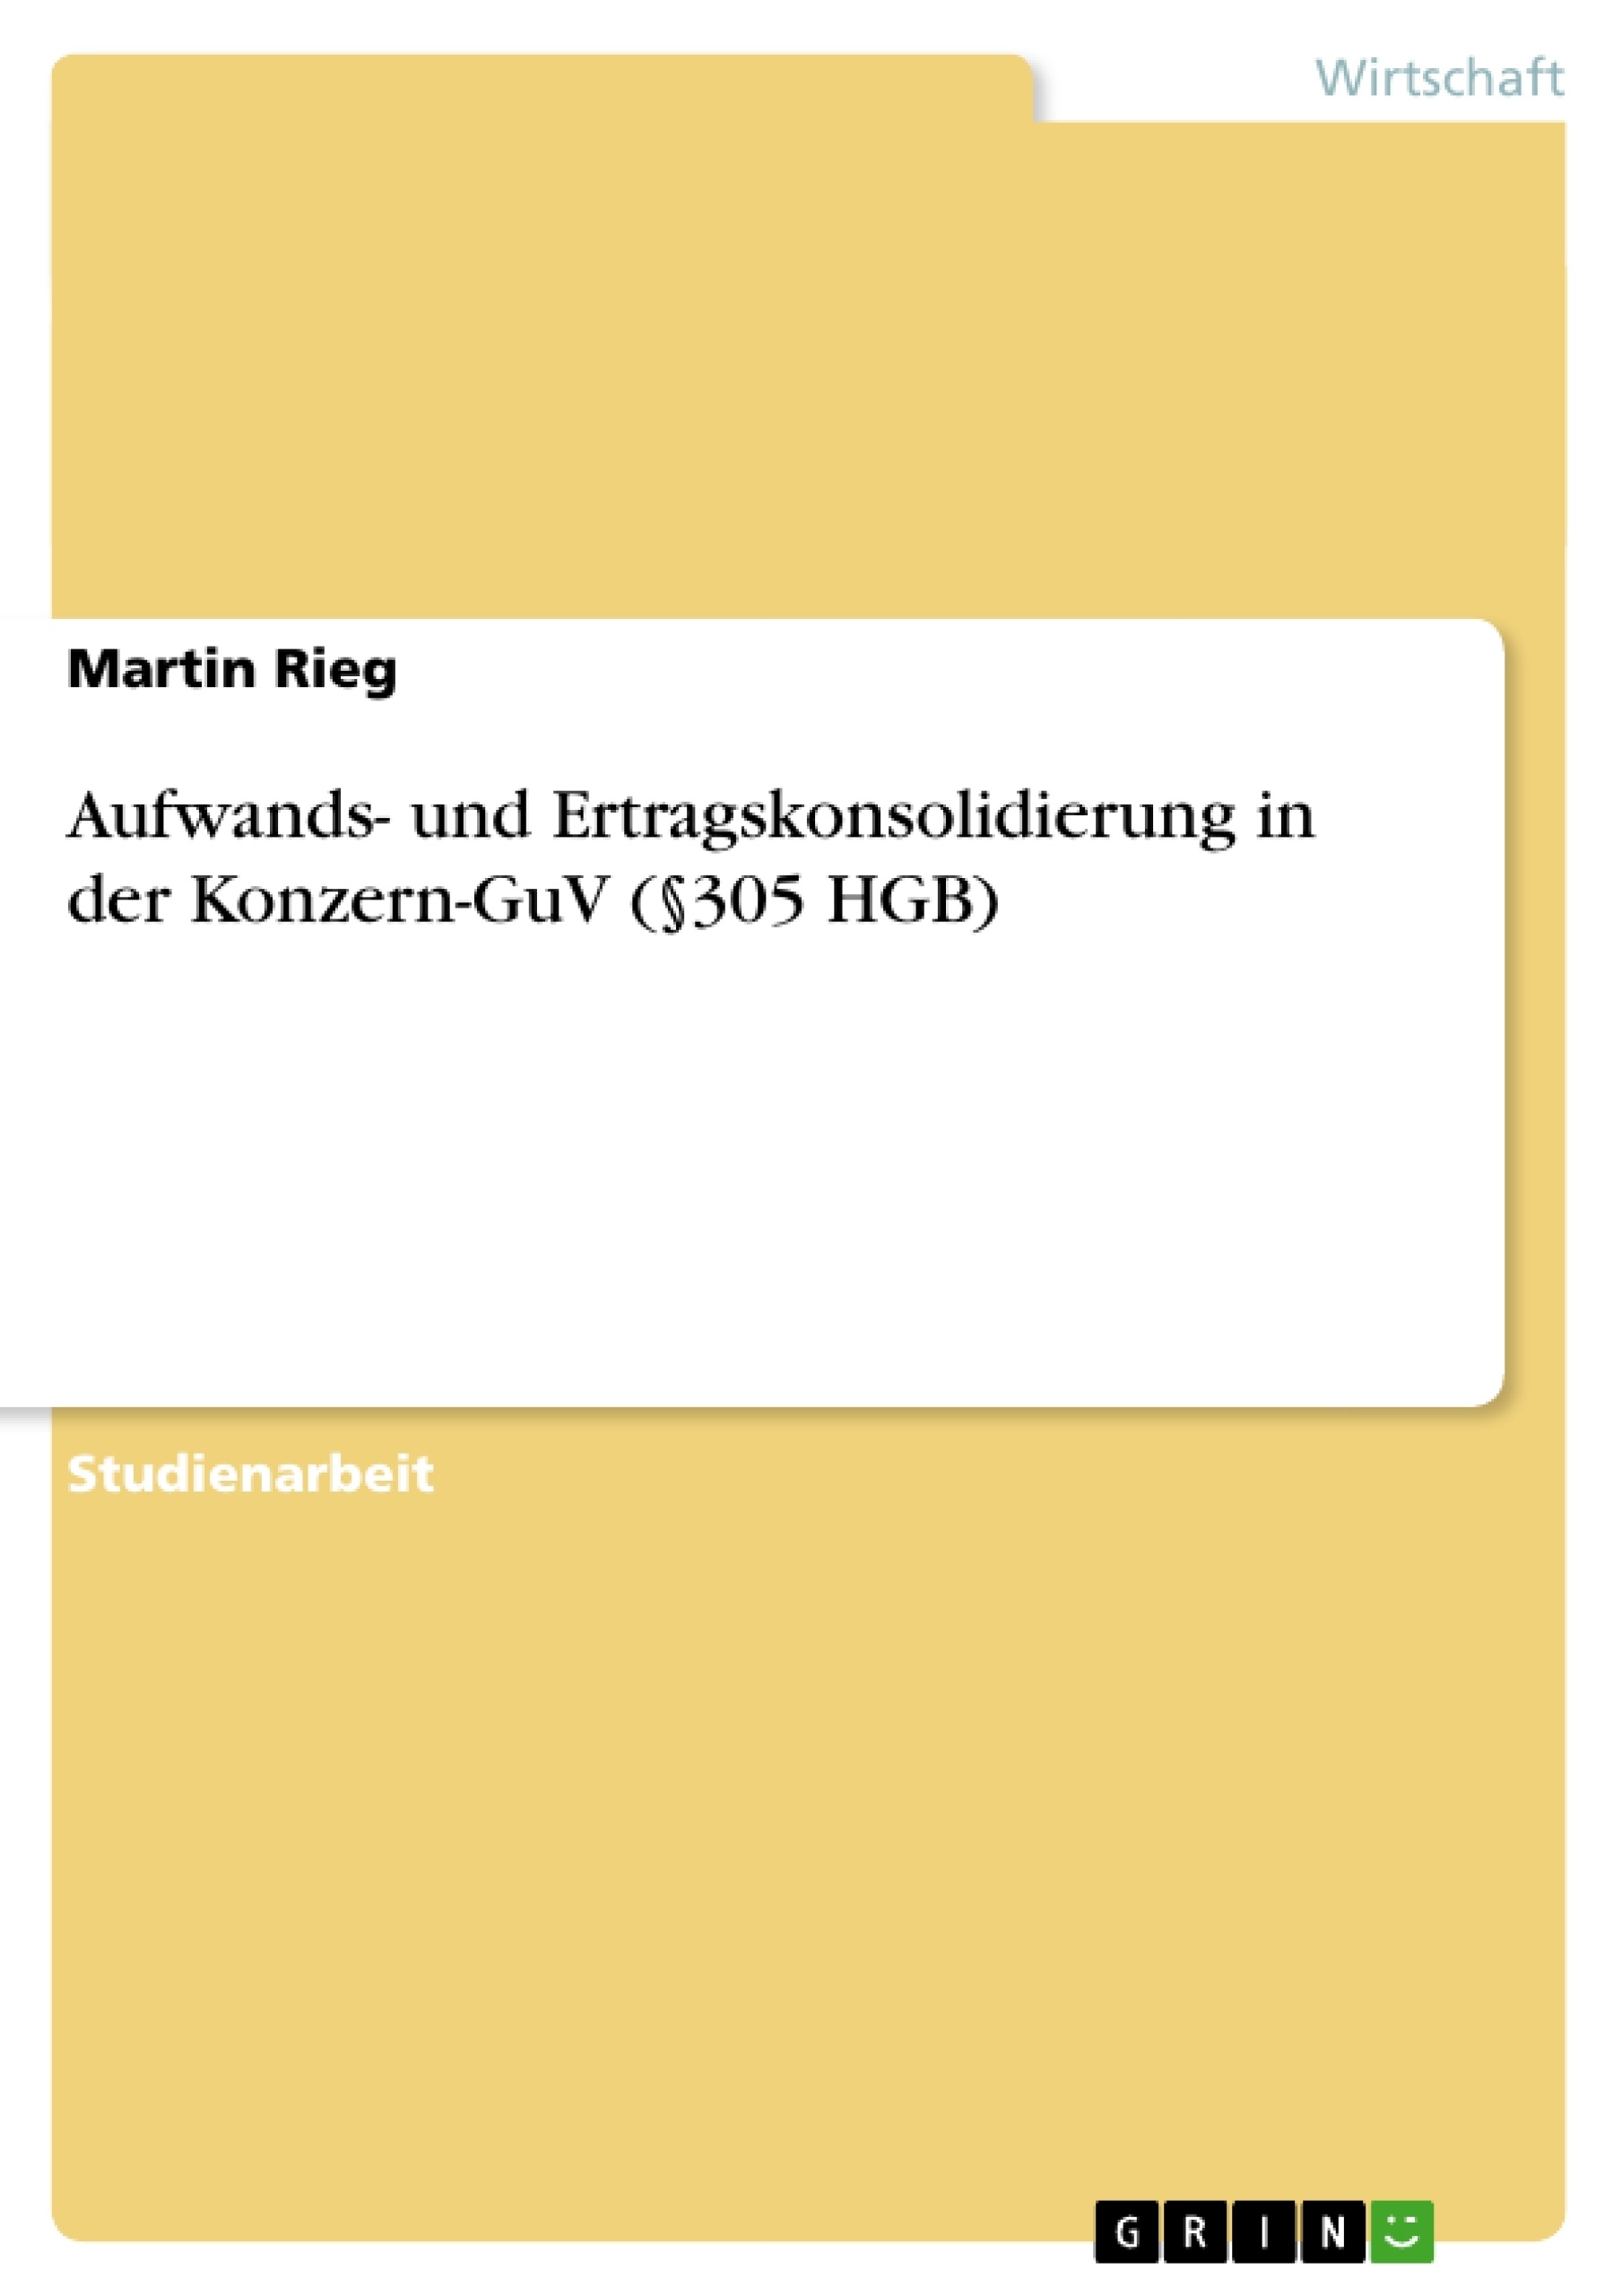 Title: Aufwands- und Ertragskonsolidierung in der Konzern-GuV (§305 HGB)